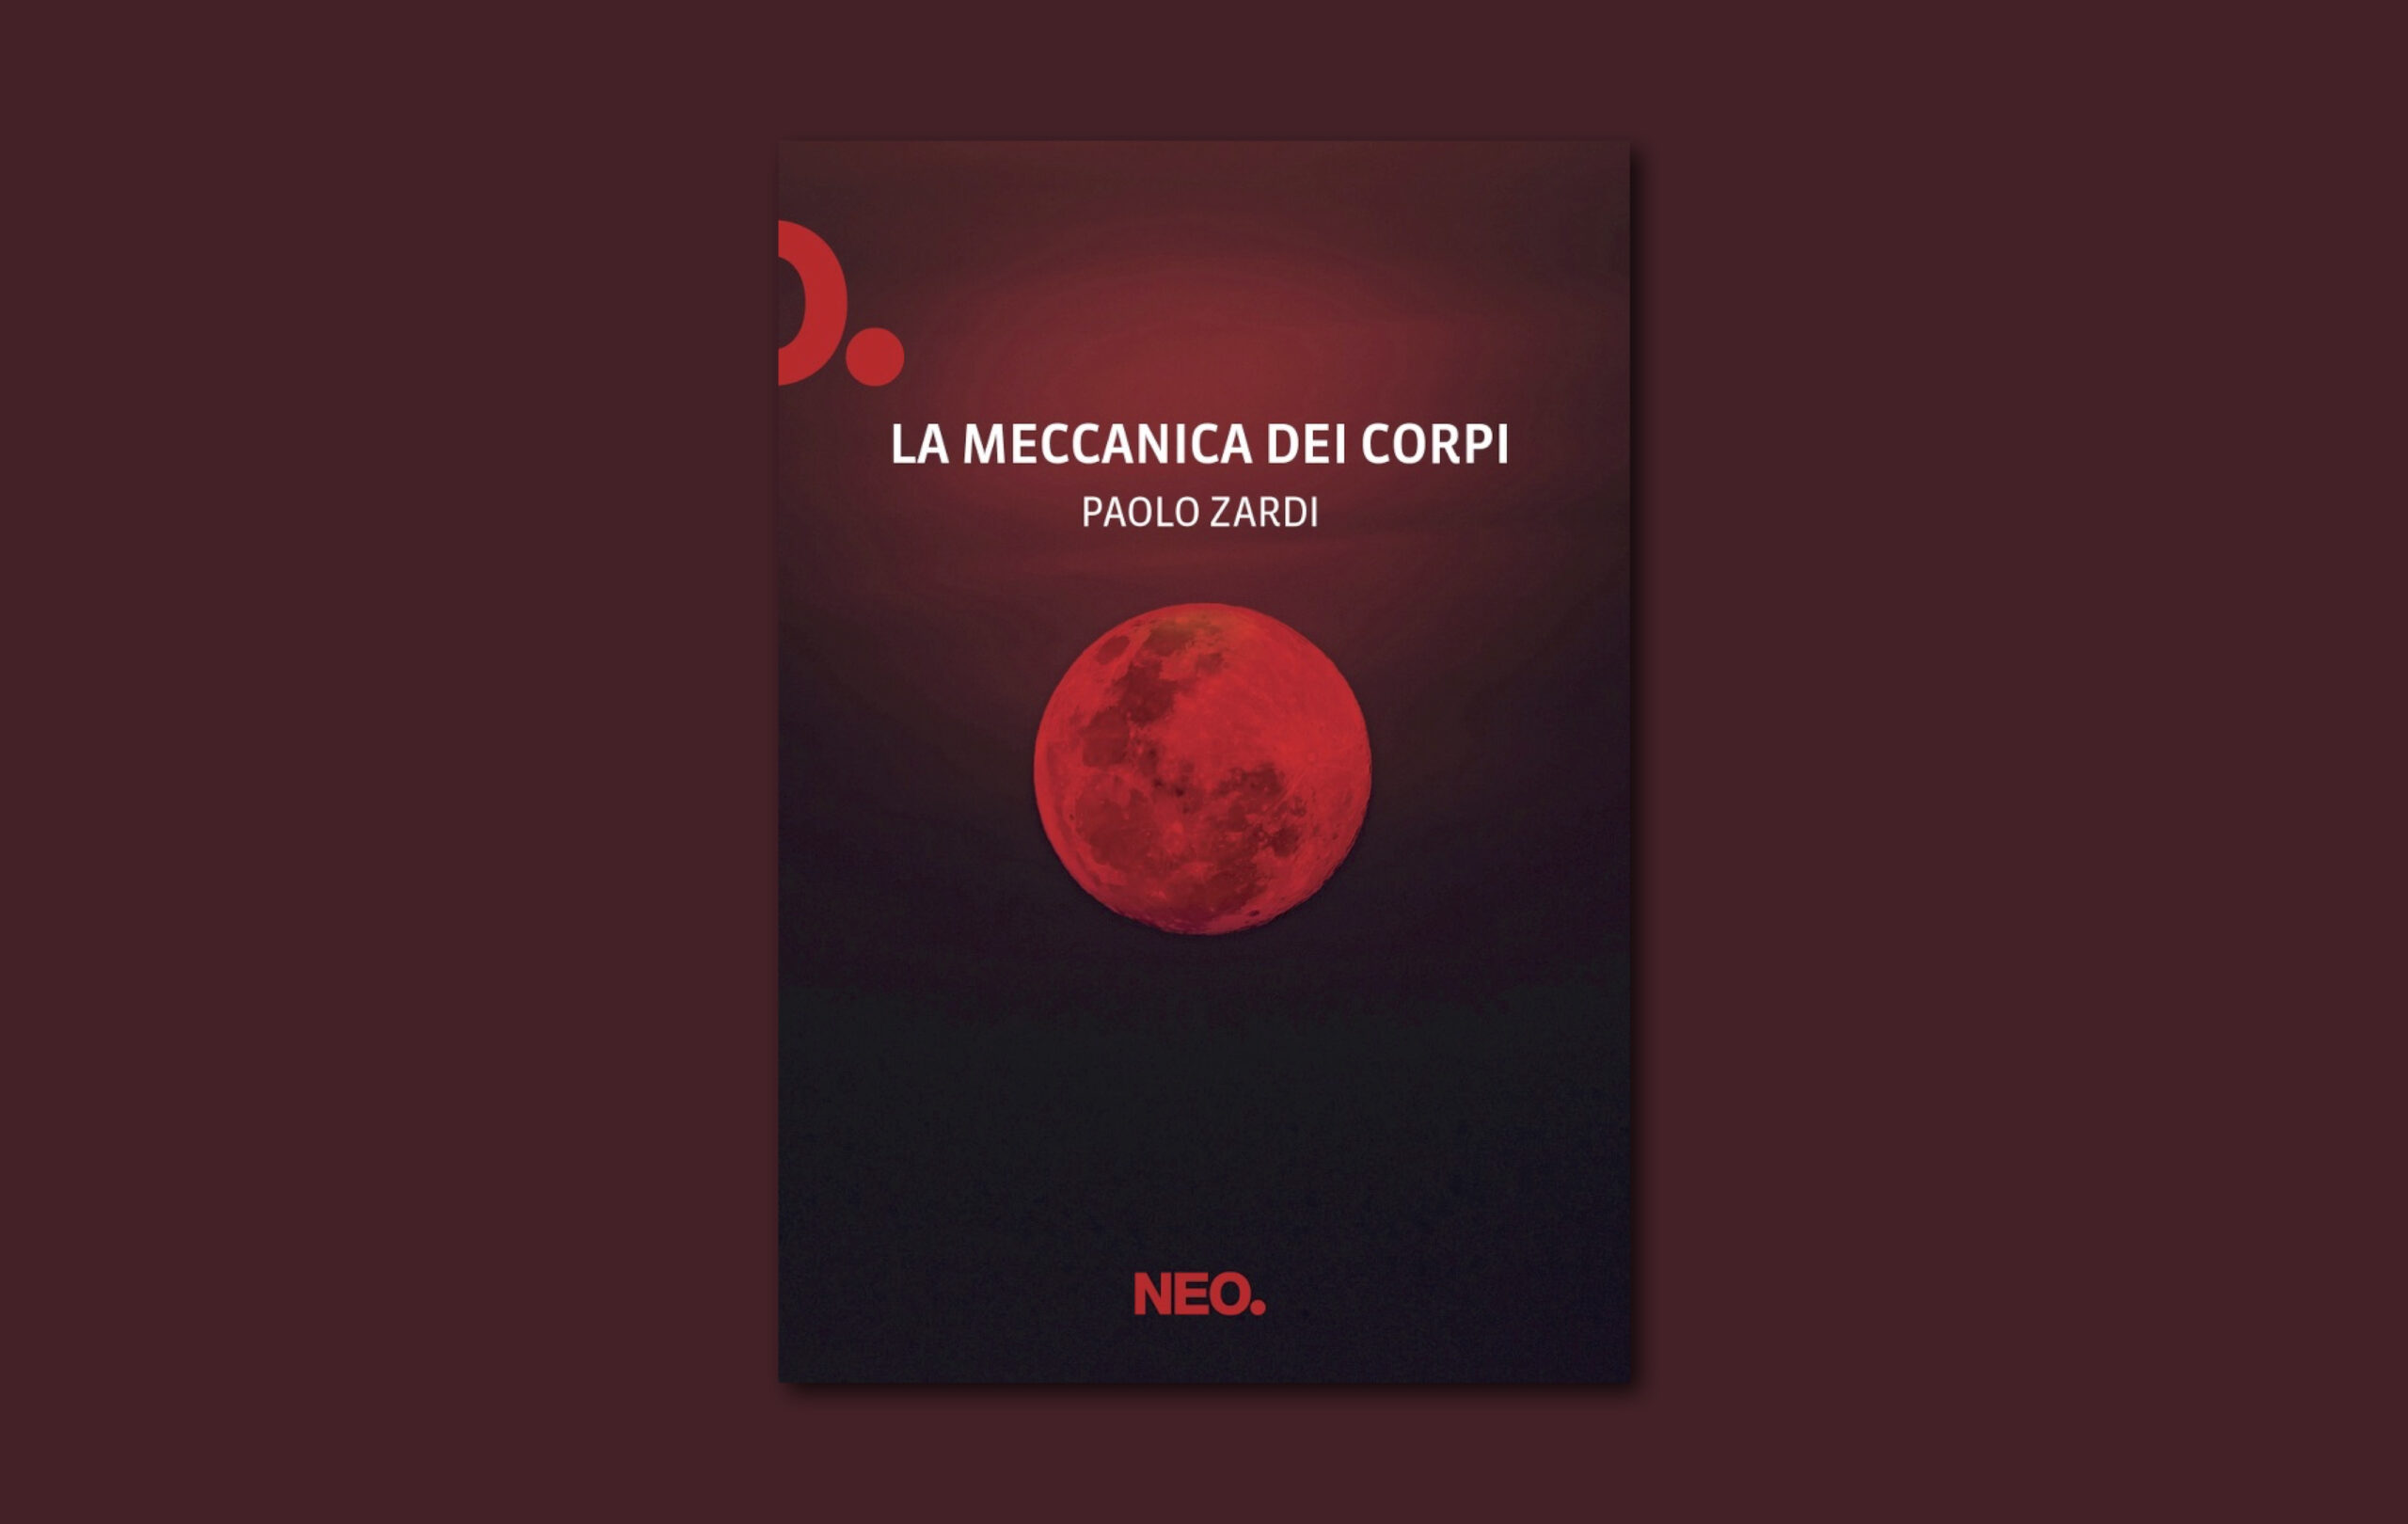 Esce oggi, mercoledì 15 novembre, La meccanica dei corpi, la nuova raccolta di raconti di Paolo Zardi pubblicata da Neo Edizioni.